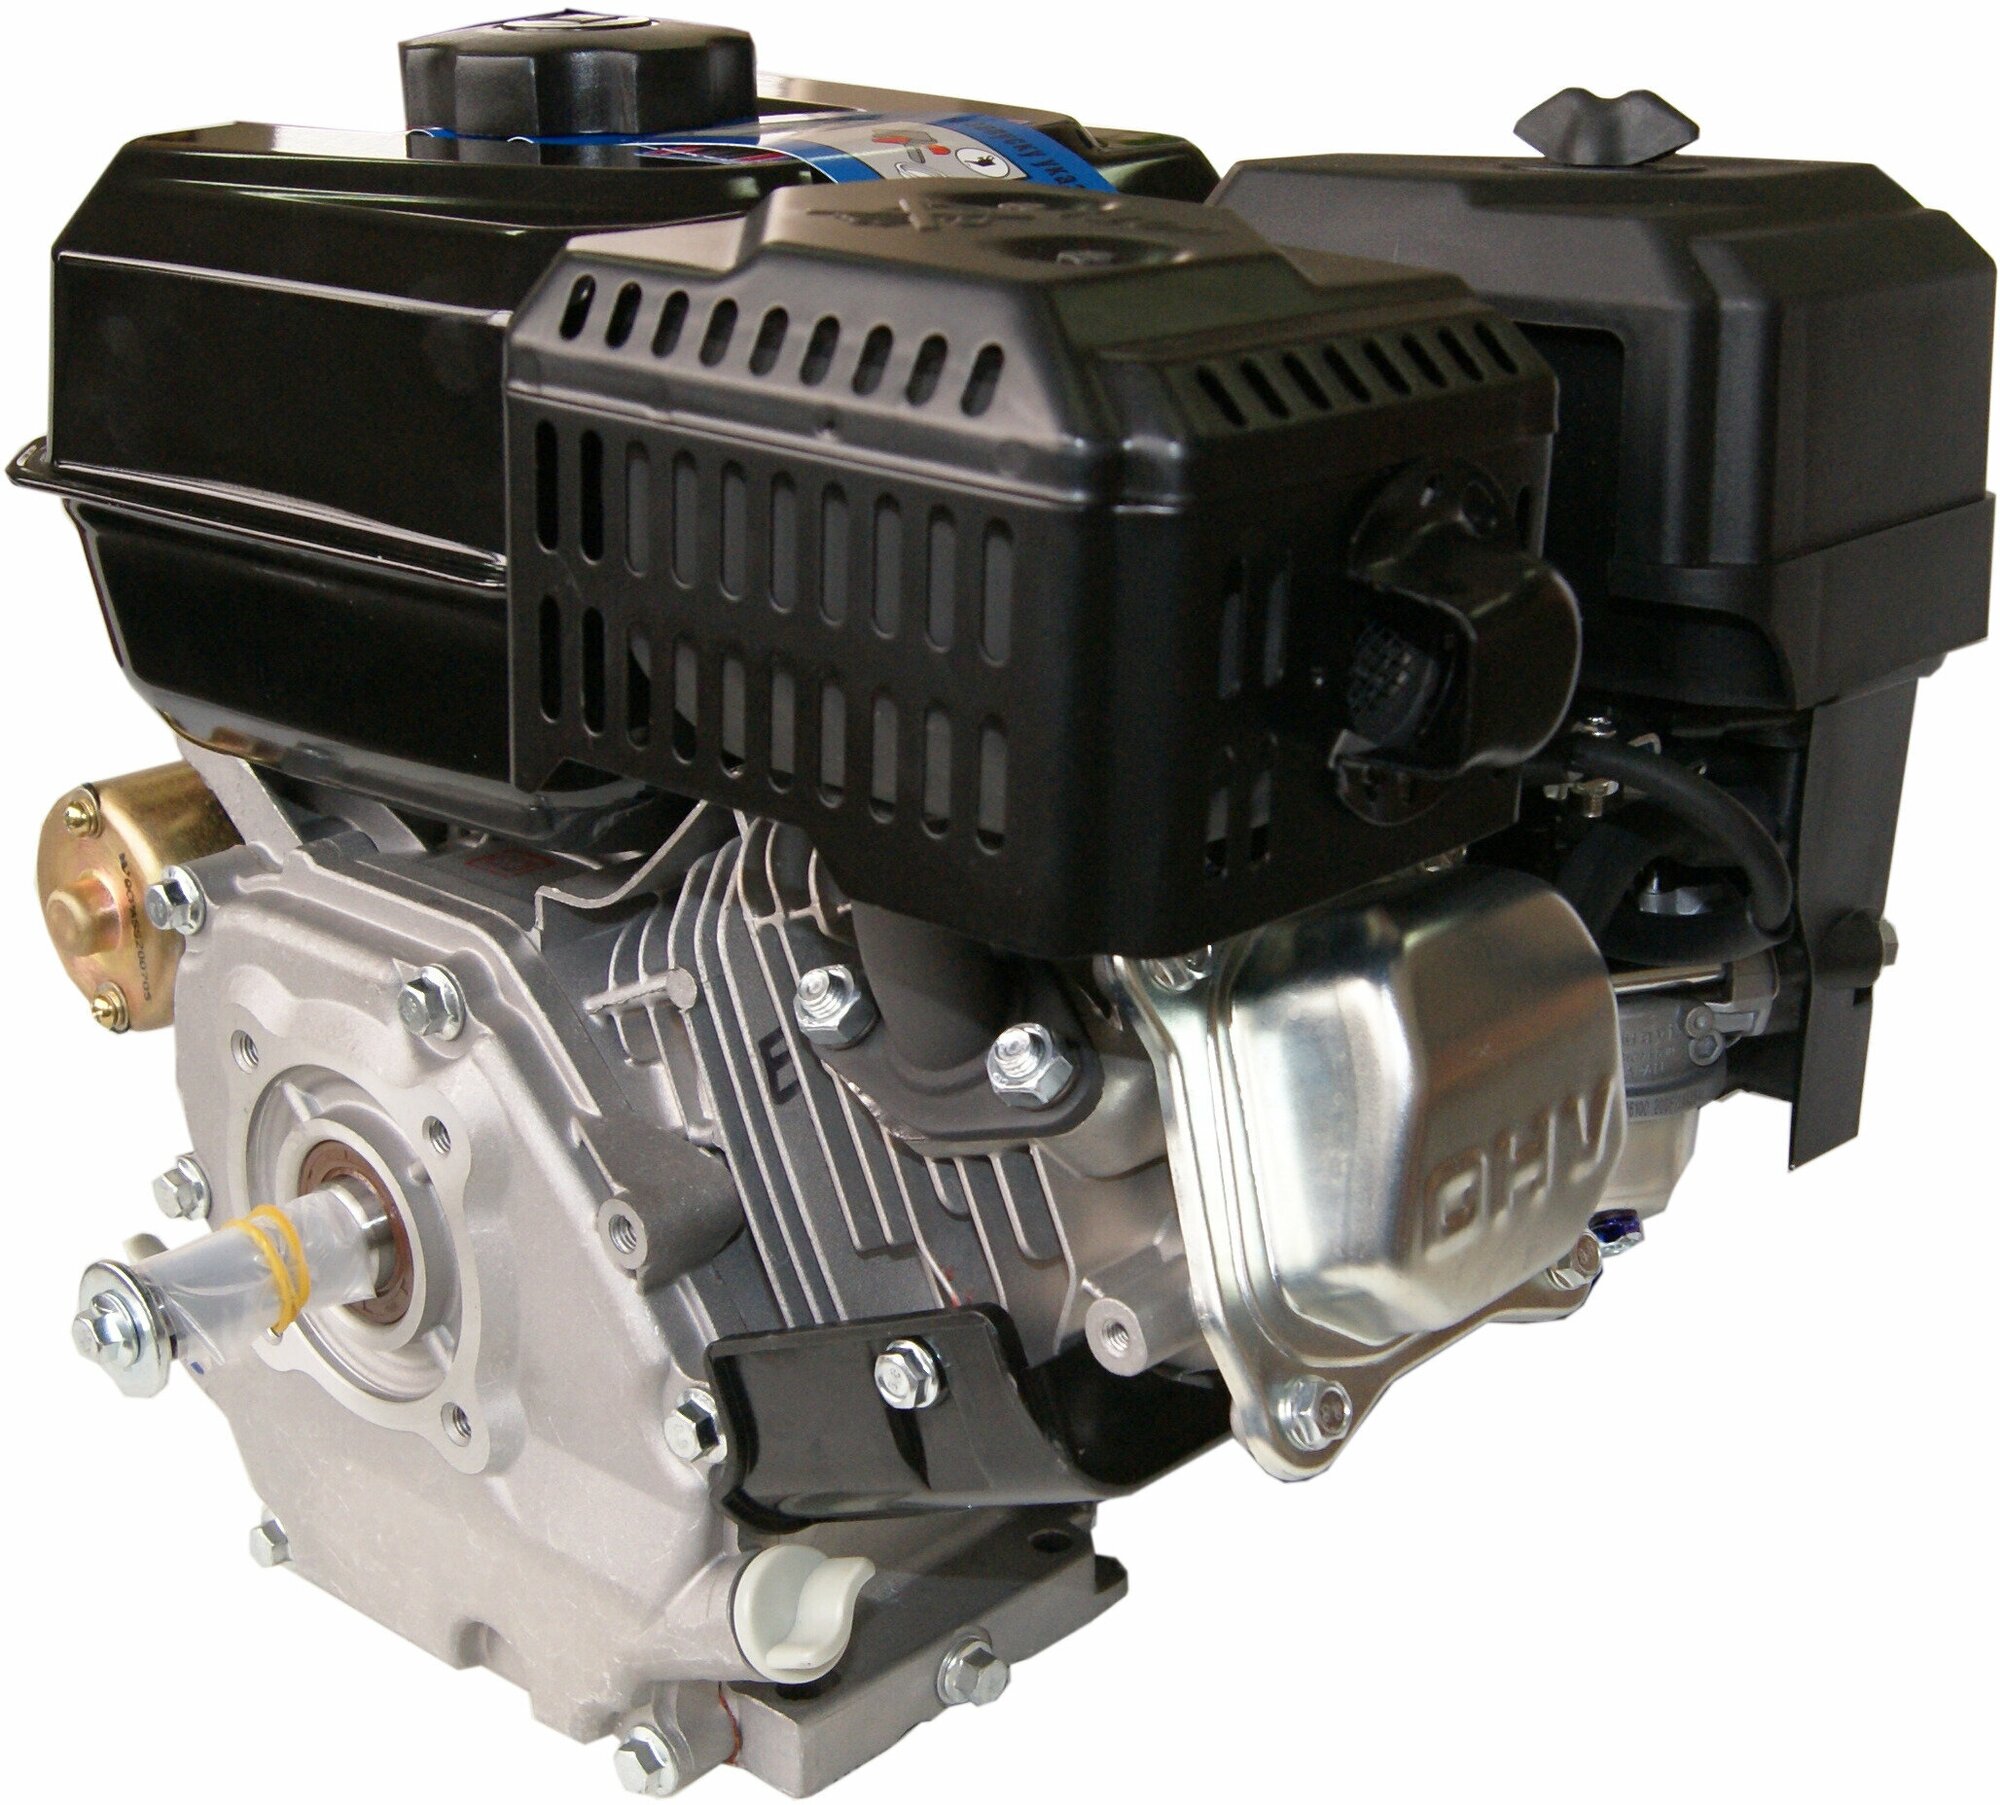 Двигатель LIFAN KP230E 7А (170F-2ТD-7А) (80 лс 4-хтактный одноцилиндровый с воздушным охлаждением вал 20 объем 223см³ ручной/электрический стартер катушка 7А вес 18 кг)